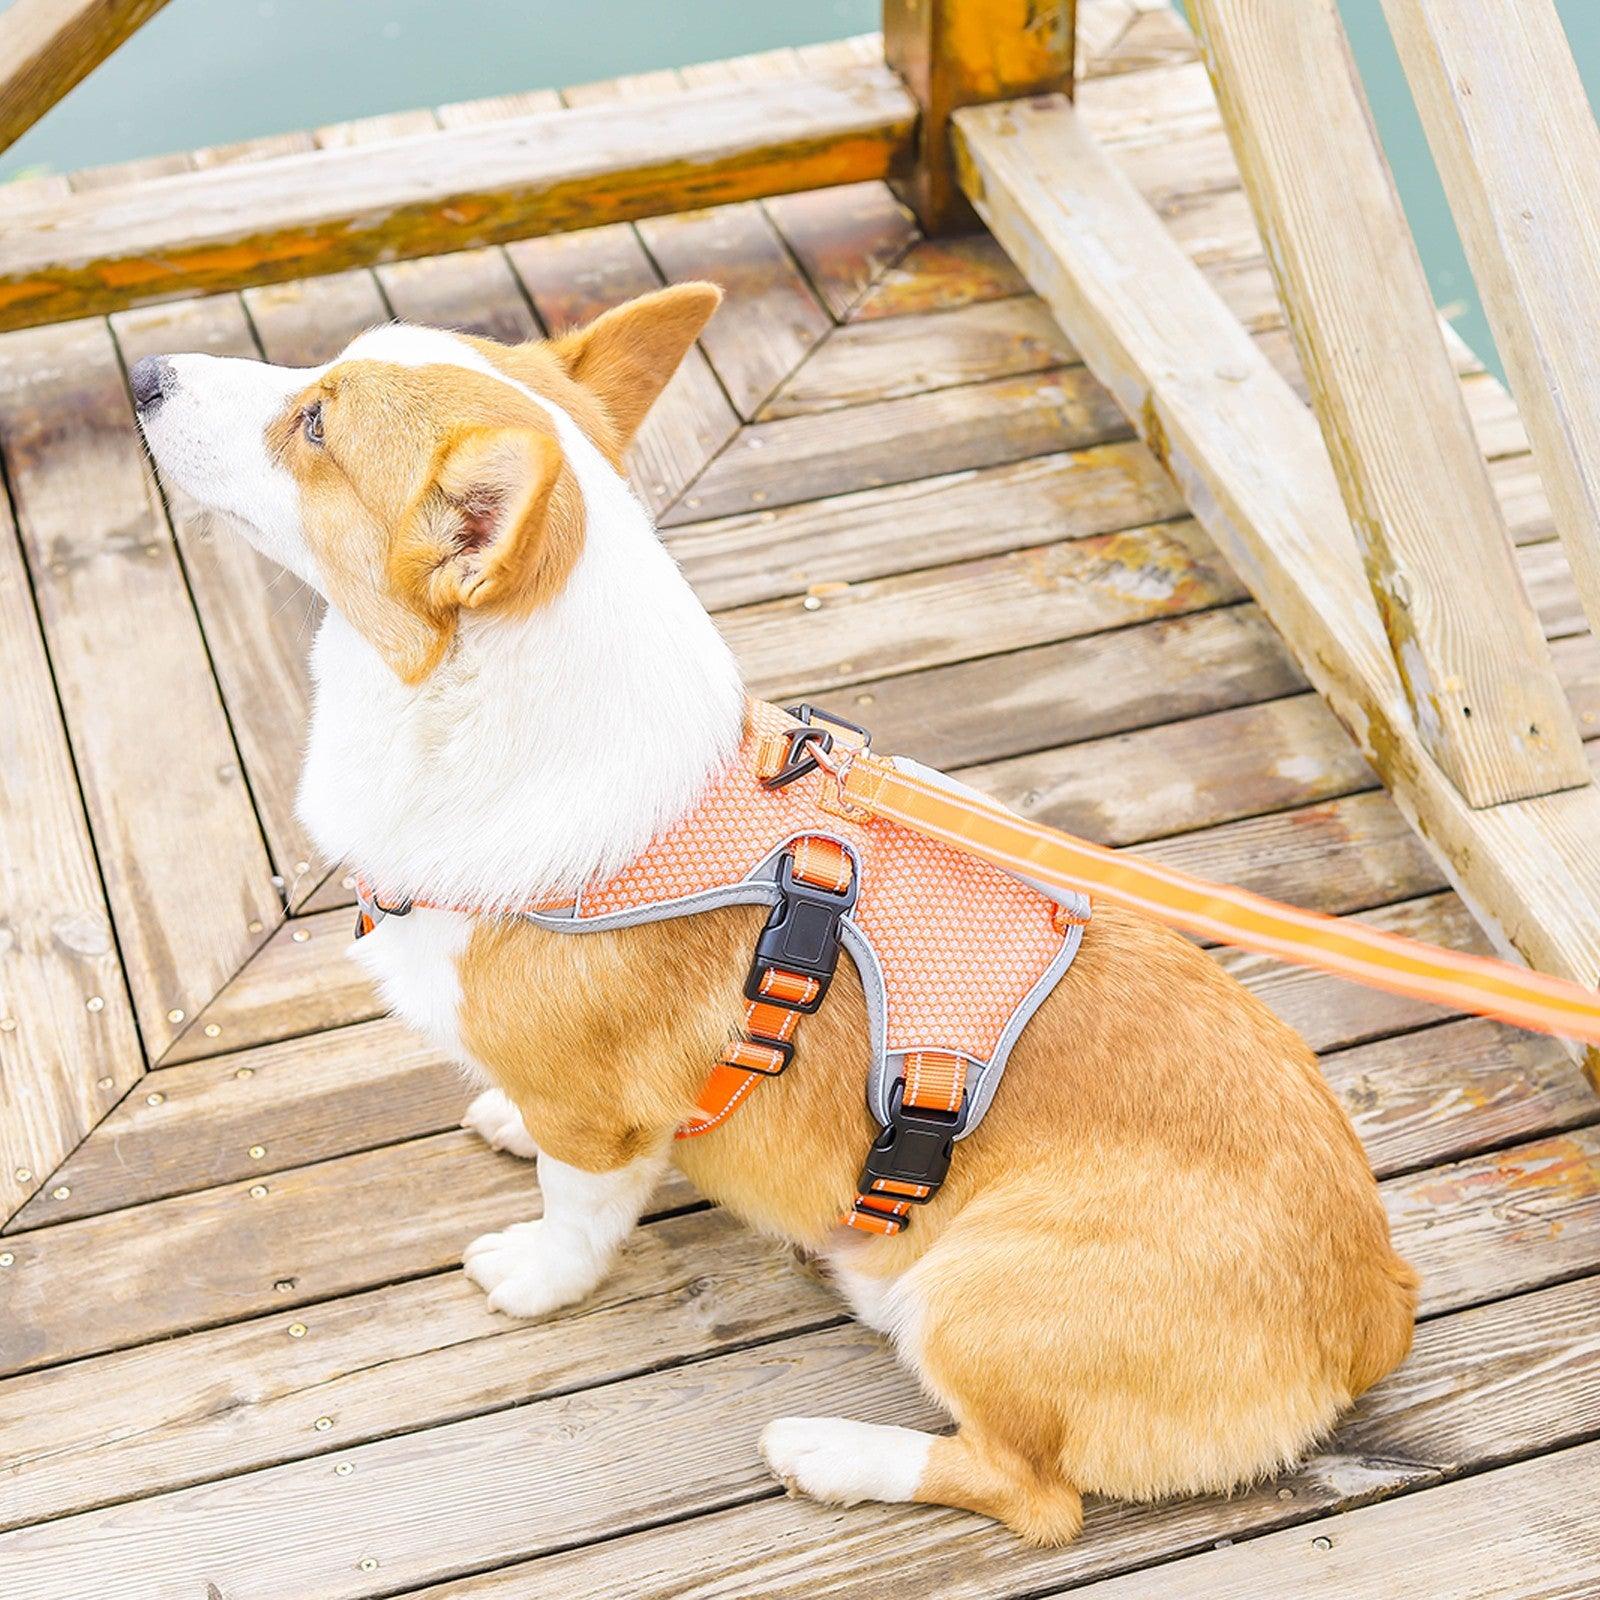 Dog sitting wearing an orange reflective dog harness